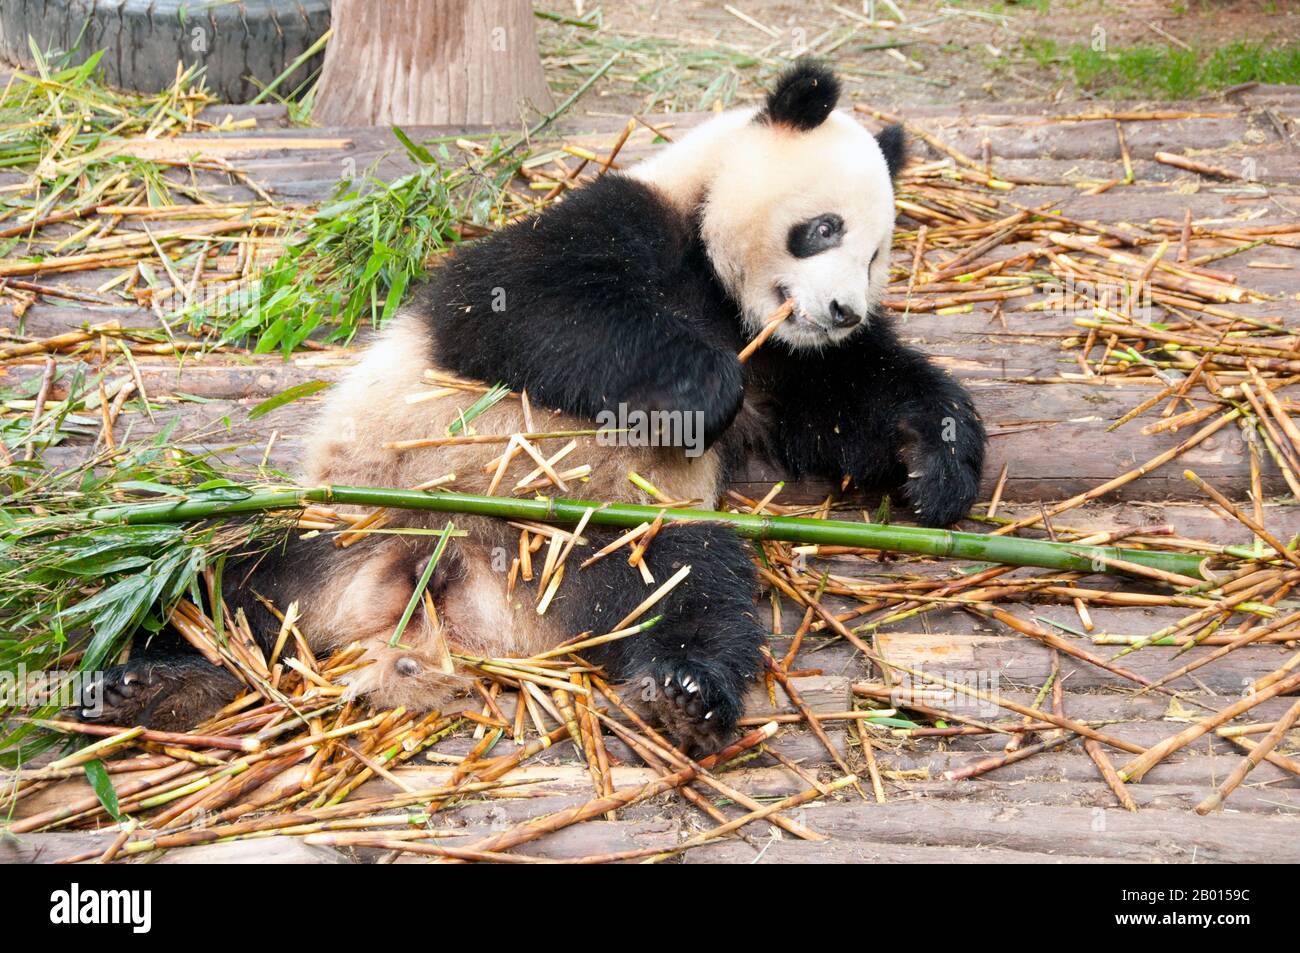 China: Pandas Gigantes, Base de Investigación de Crianza de Panda Gigante, Chengdu, Provincia de Sichuan. El panda gigante, o panda (Ailuropoda melanoleuca, que significa literalmente 'gato blanco y negro pie') es un oso nativo del centro-oeste y del suroeste de China. Se reconoce fácilmente por sus grandes y distintivos parches negros alrededor de los ojos, sobre las orejas, y a través de su cuerpo redondo. Aunque pertenece a la orden Carnivora, la dieta del panda es 99% bambú. Foto de stock